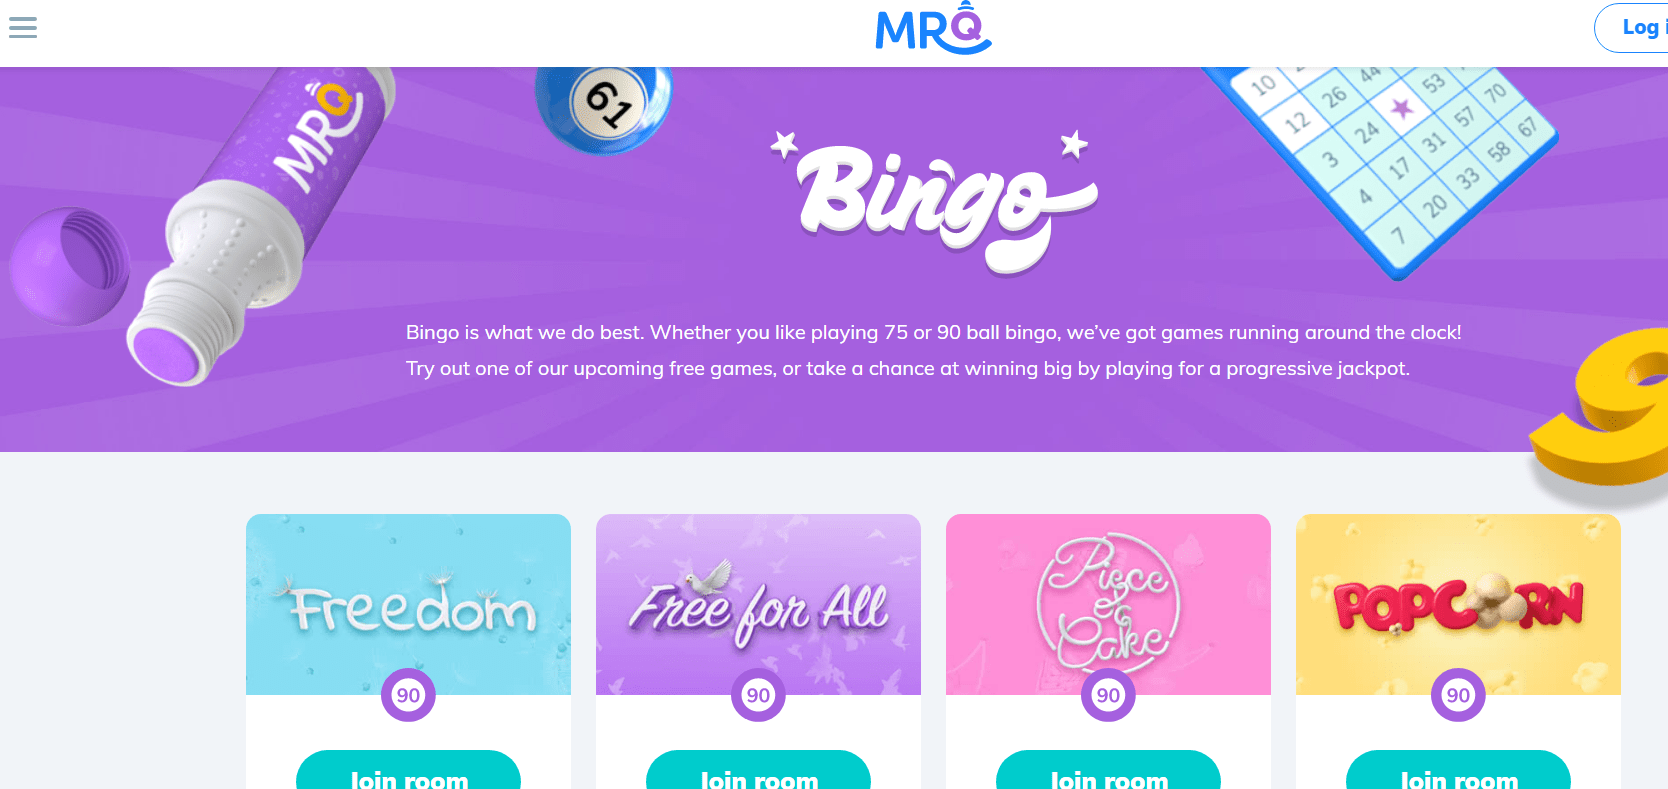 MrQ Bingo